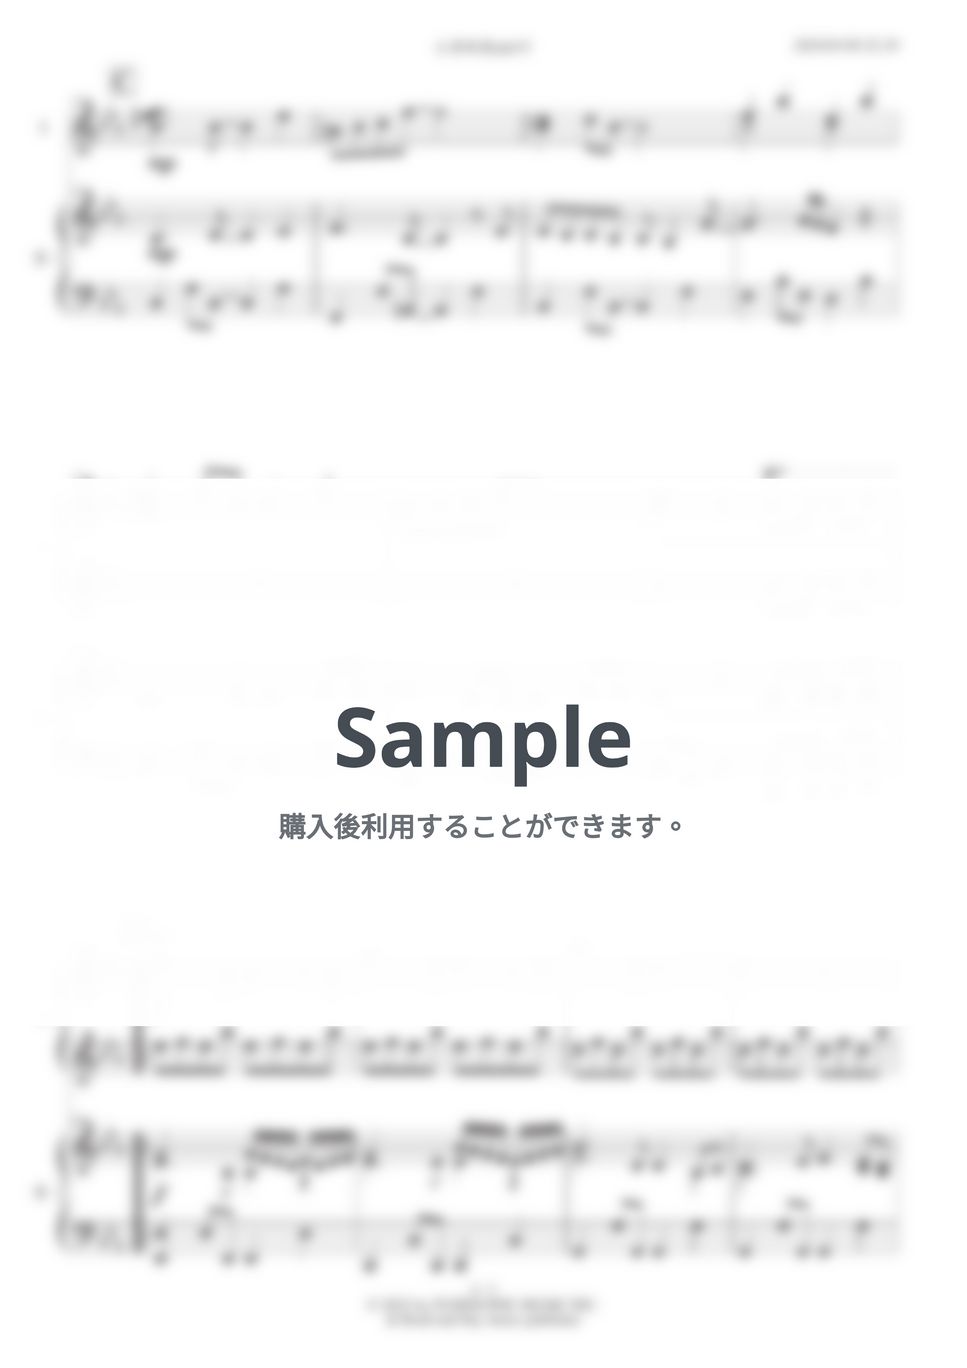 スピッツ - ときめきpart1 (ピアノ連弾)